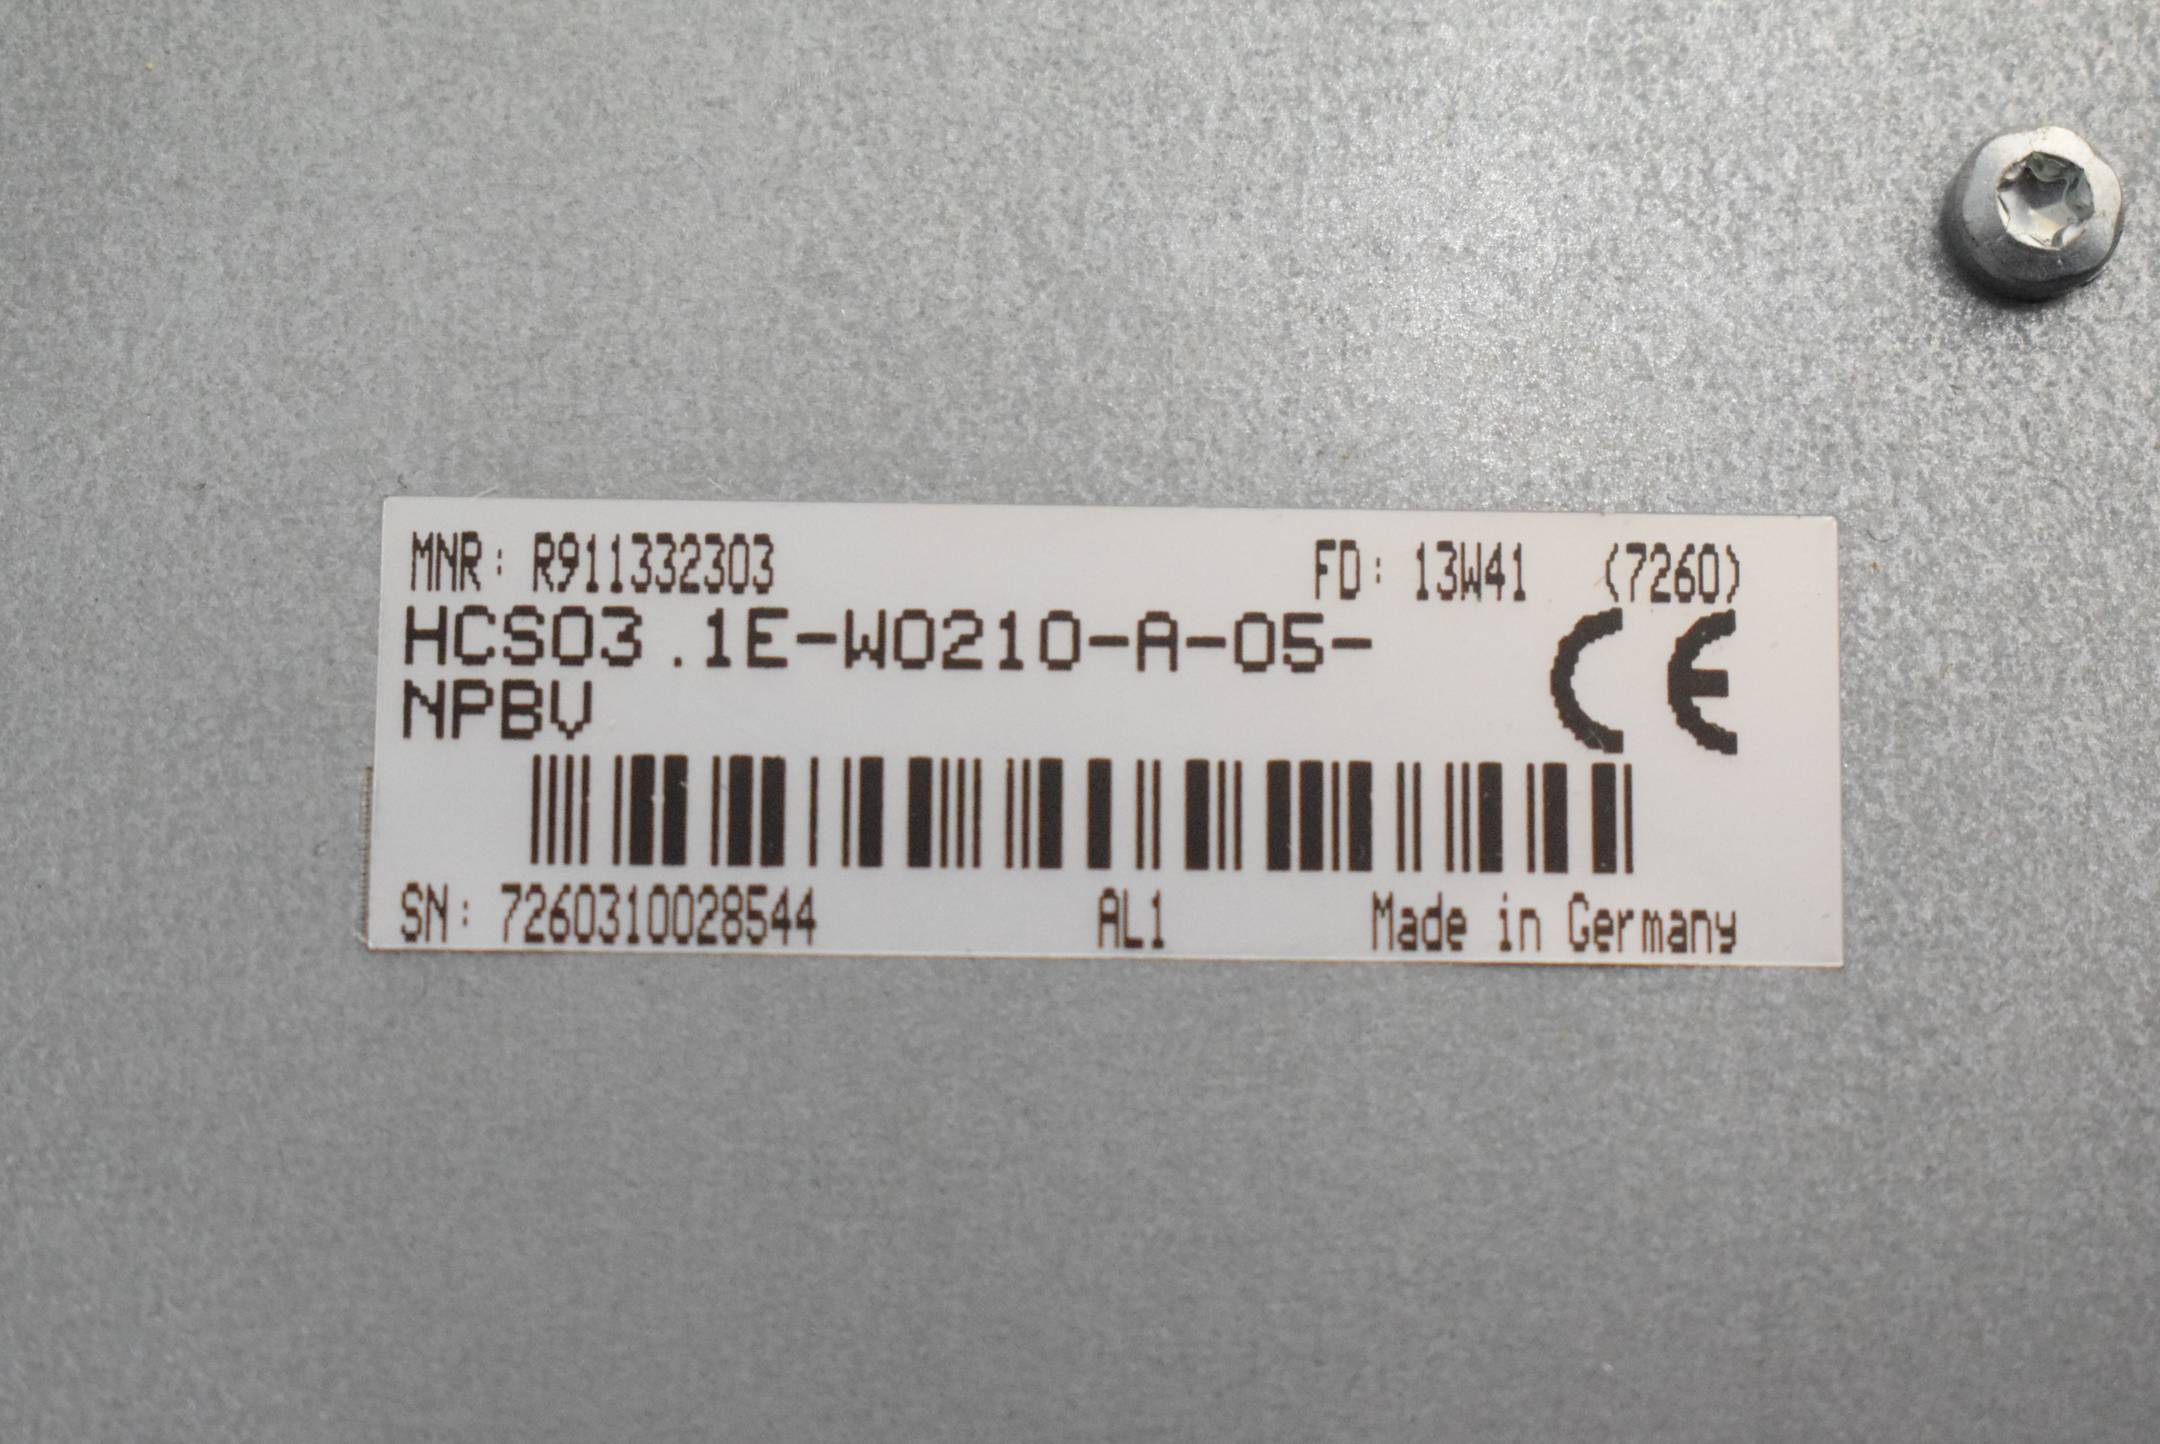 Rexroth Frequenzumrichter HCS03.1E-W0210-A-05-NPBV ( R911332303 )